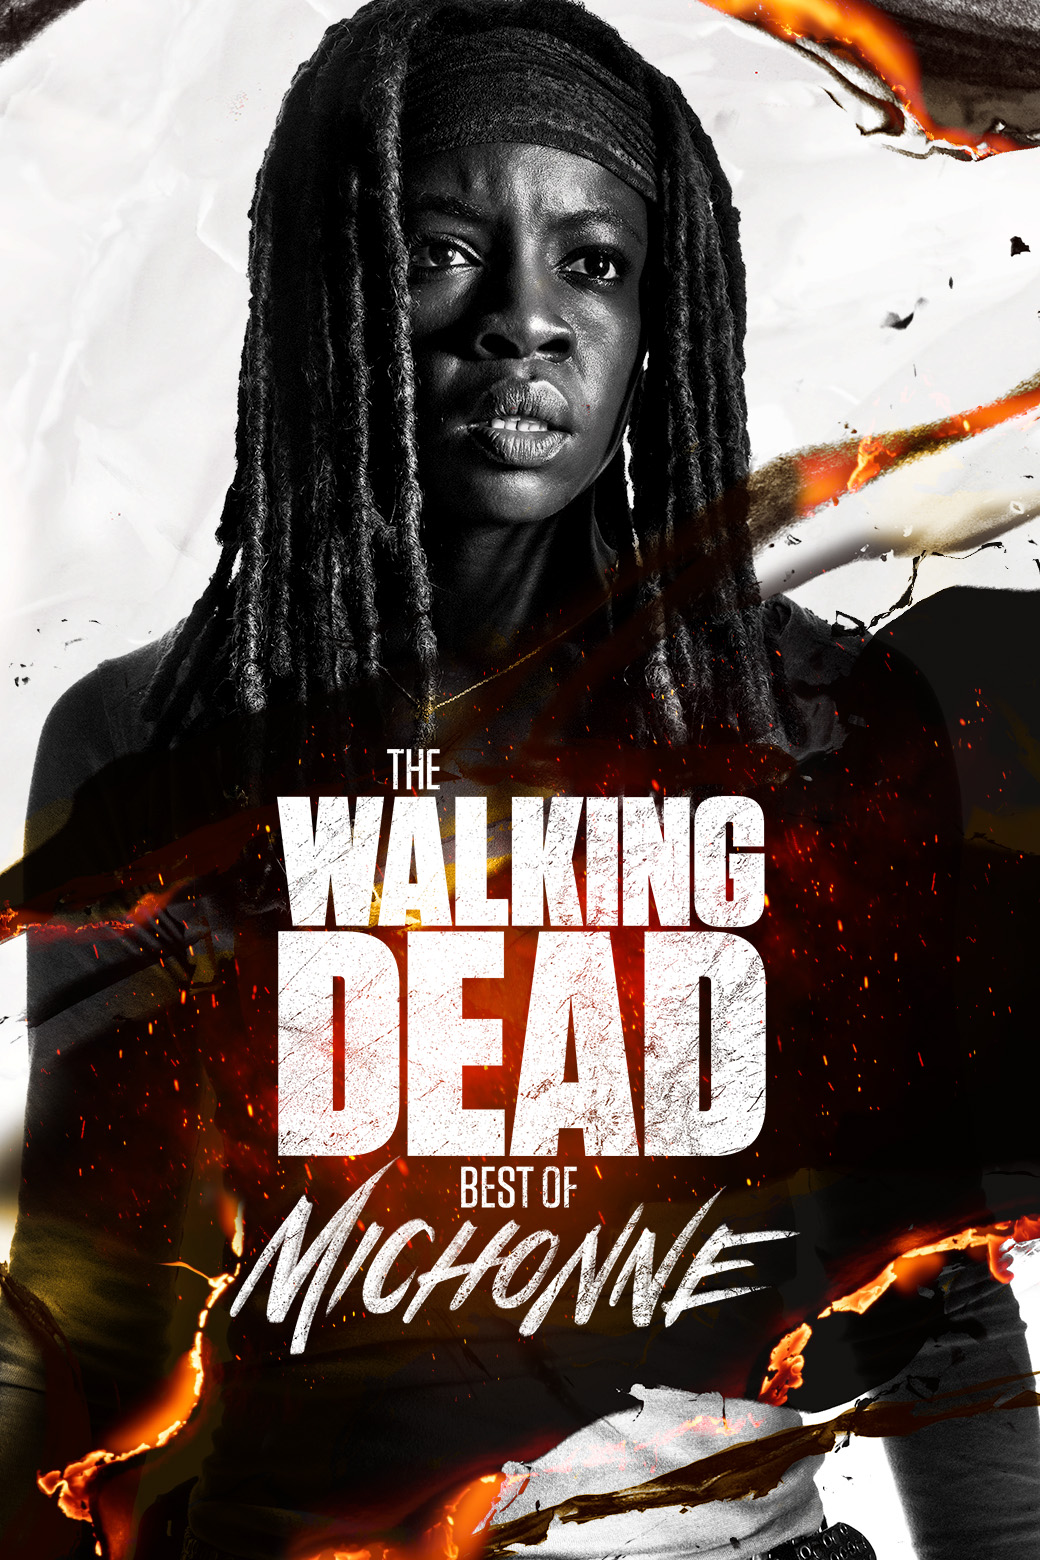 The Walking Dead: Best of Michonne